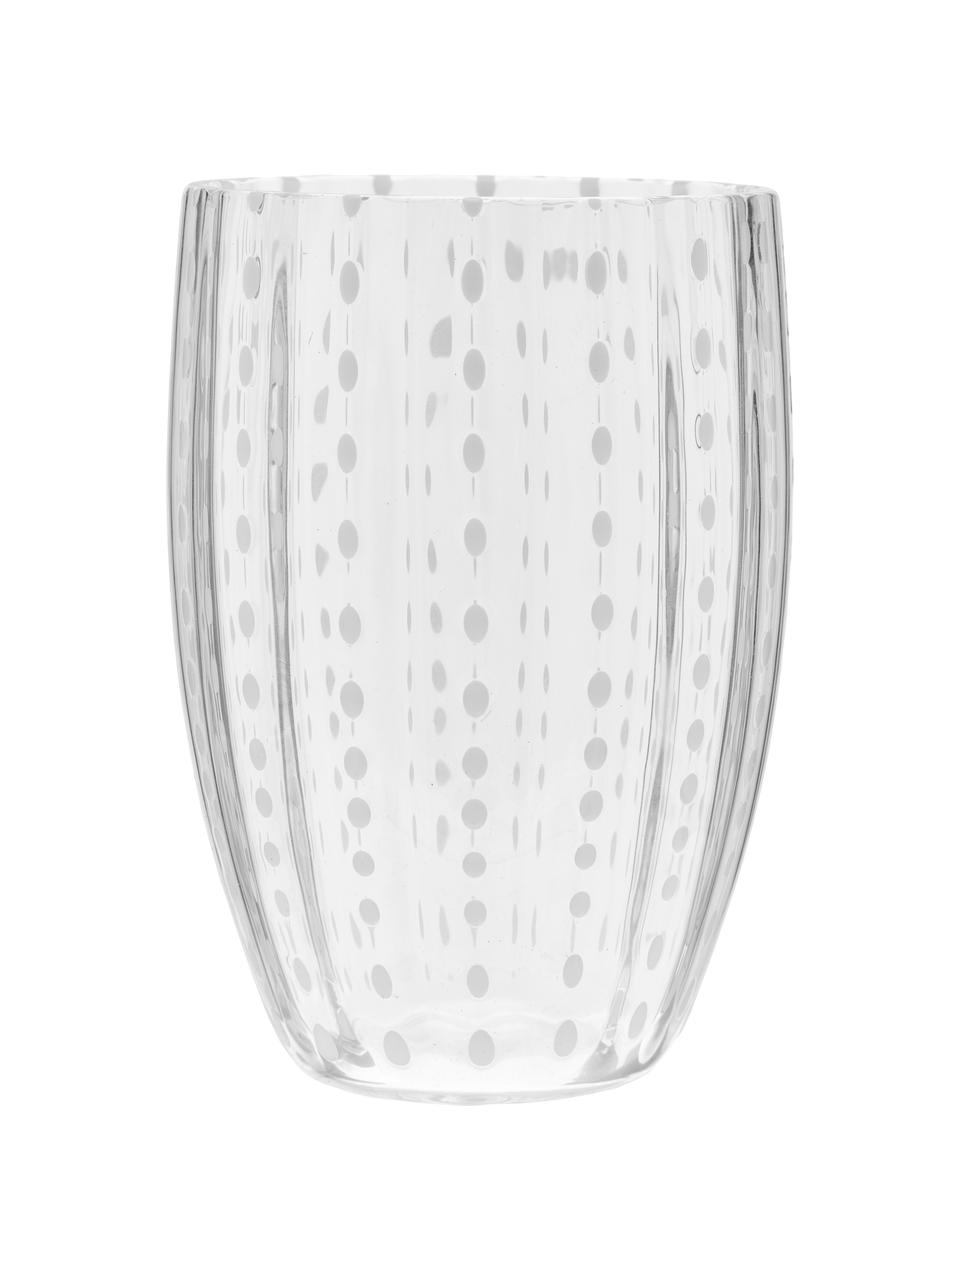 Komplet szklanek ze szkła dmuchanego Melting Pot Calm, 6 elem., Szkło, Transparentny, biały, Ø 7-10 x W 9-11 cm, 270 do 440 ml